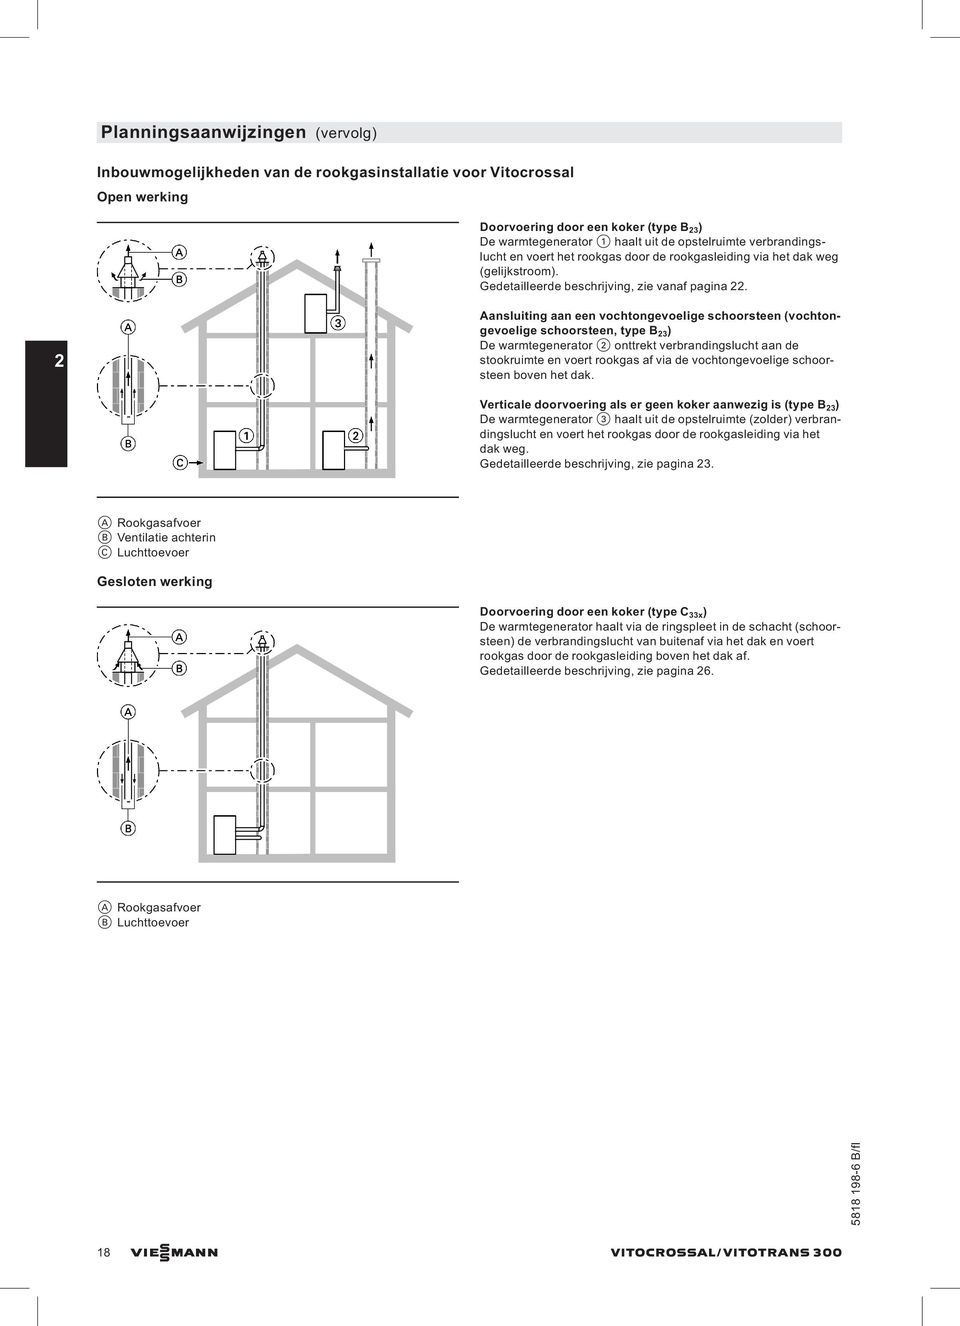 2 Aansluiting aan een vochtongevoelige schoorsteen (vochtongevoelige schoorsteen, type B 2 ) De warmtegenerator 2 onttrekt verbrandingslucht aan de stookruimte en voert rookgas af via de